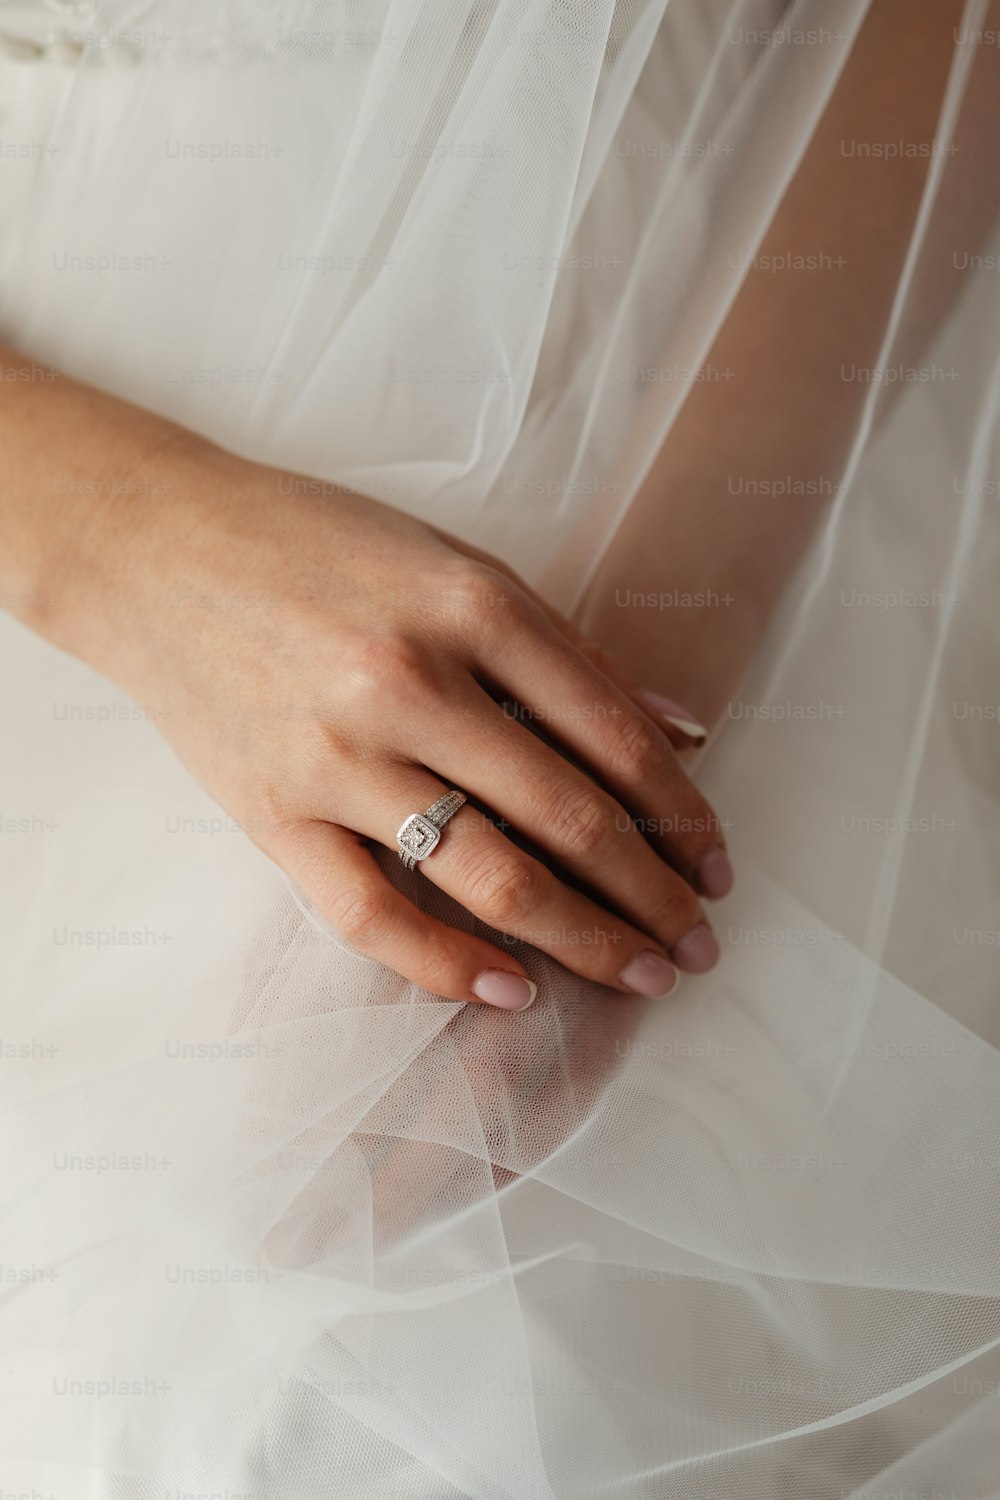 um close up de uma pessoa usando uma aliança de casamento